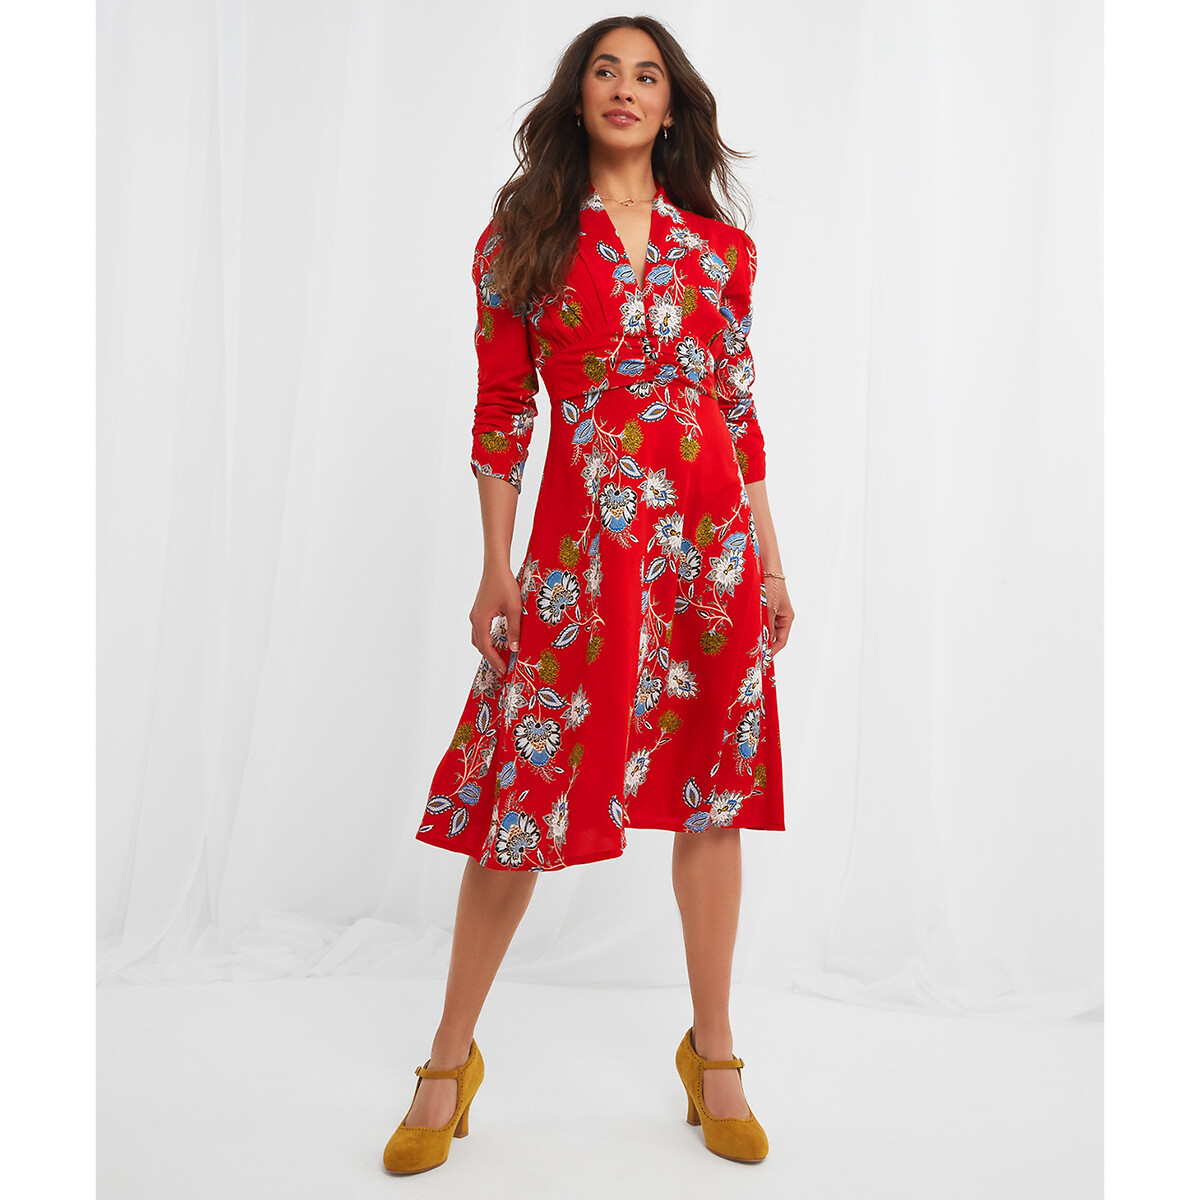 Платье JOE BROWNS Платье С V-образным вырезом цветочный принт 50 красный, размер 50 - фото 1